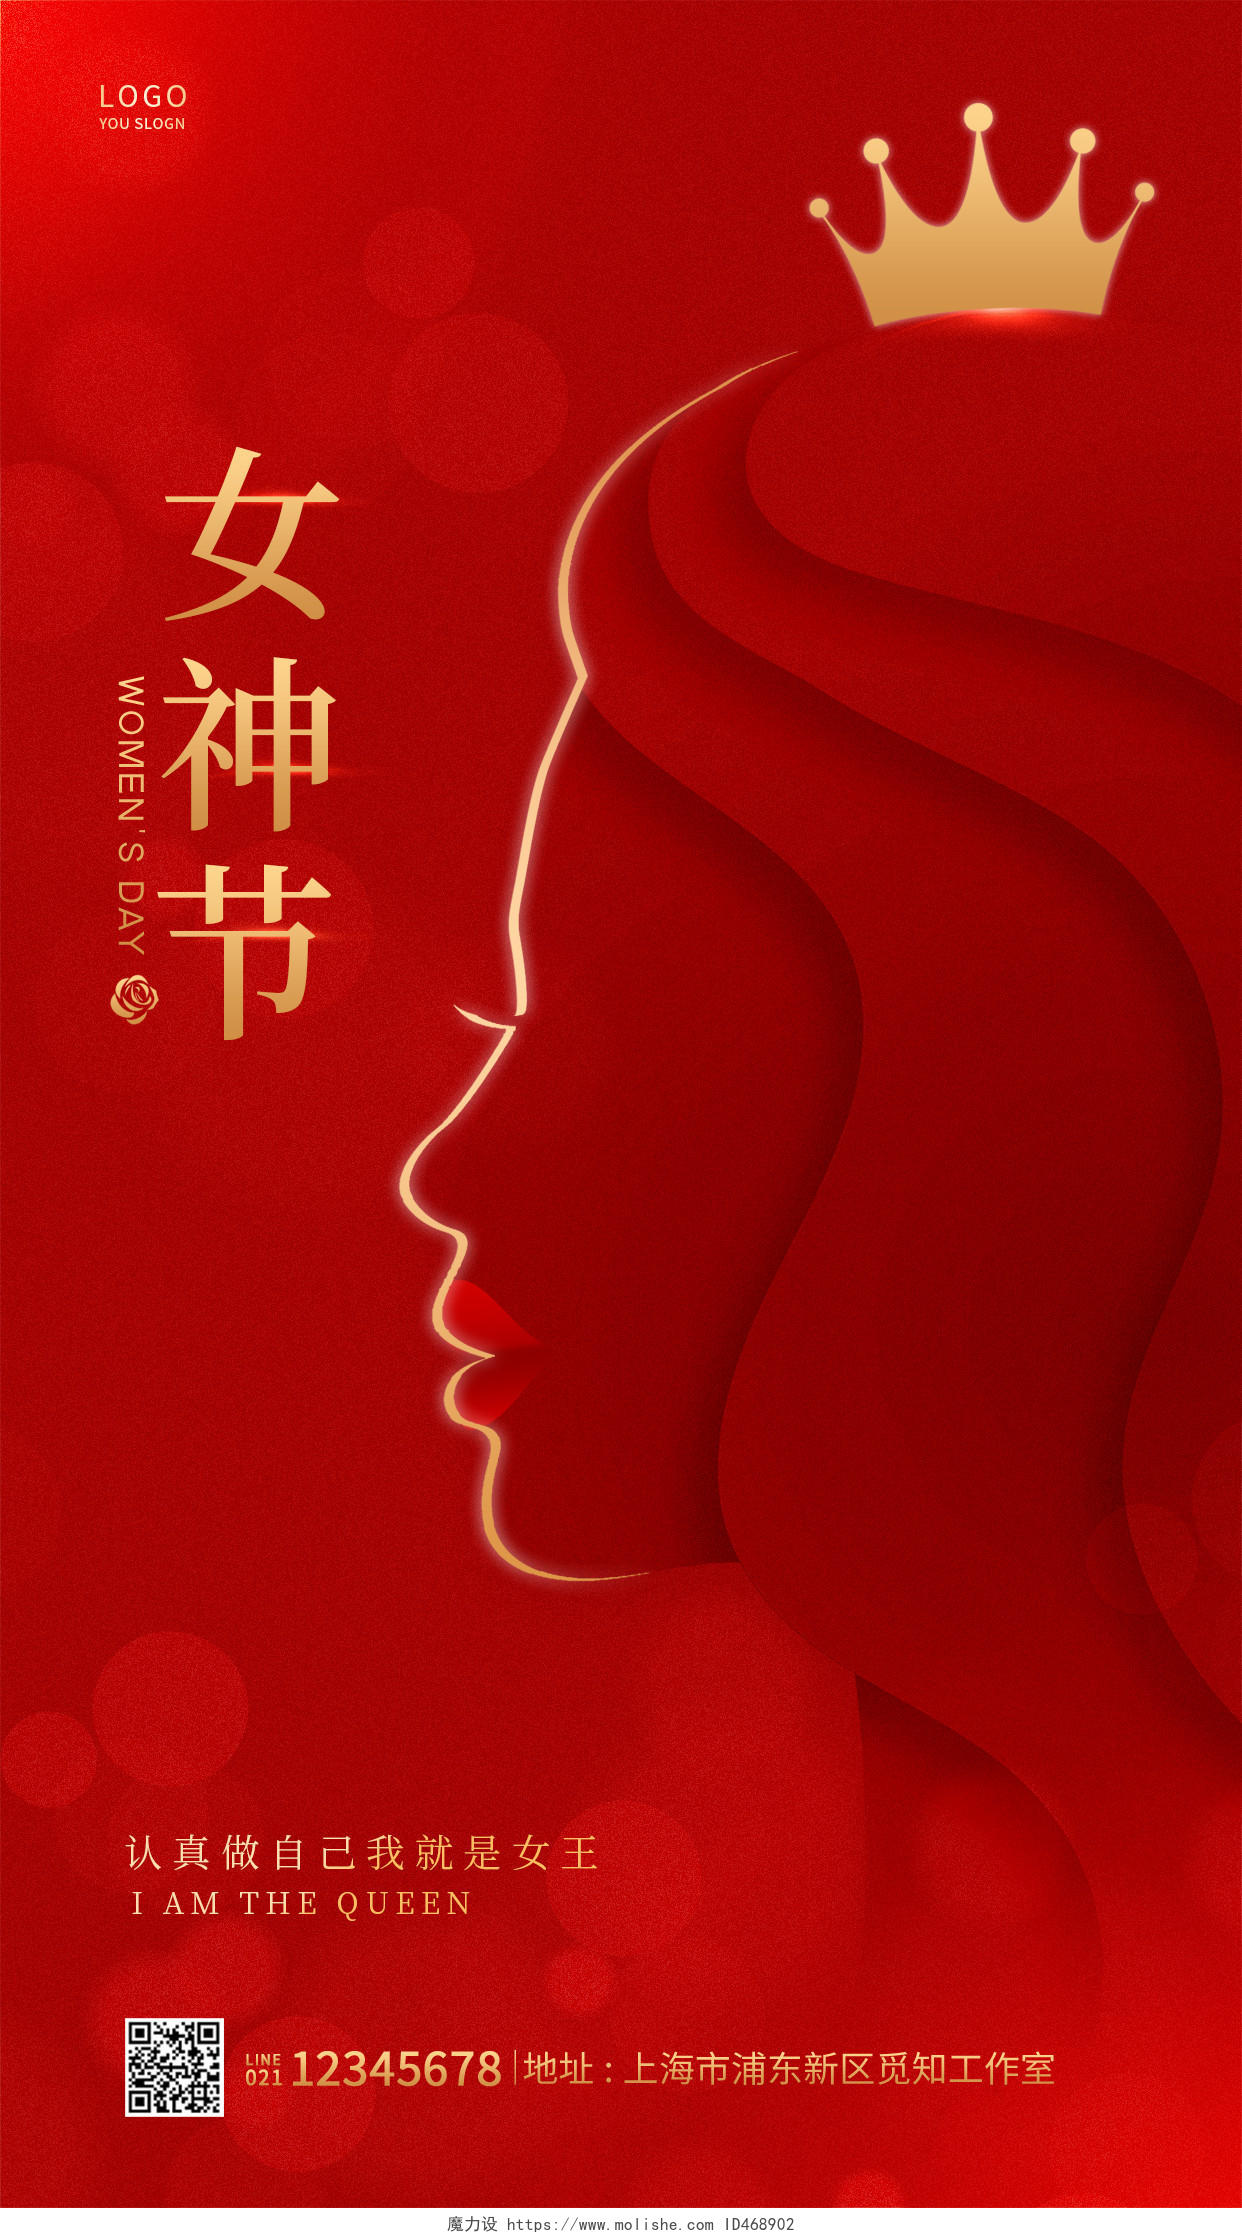 红色简约风格女神节38妇女节海报妇女节手机宣传海报38妇女节三八妇女节